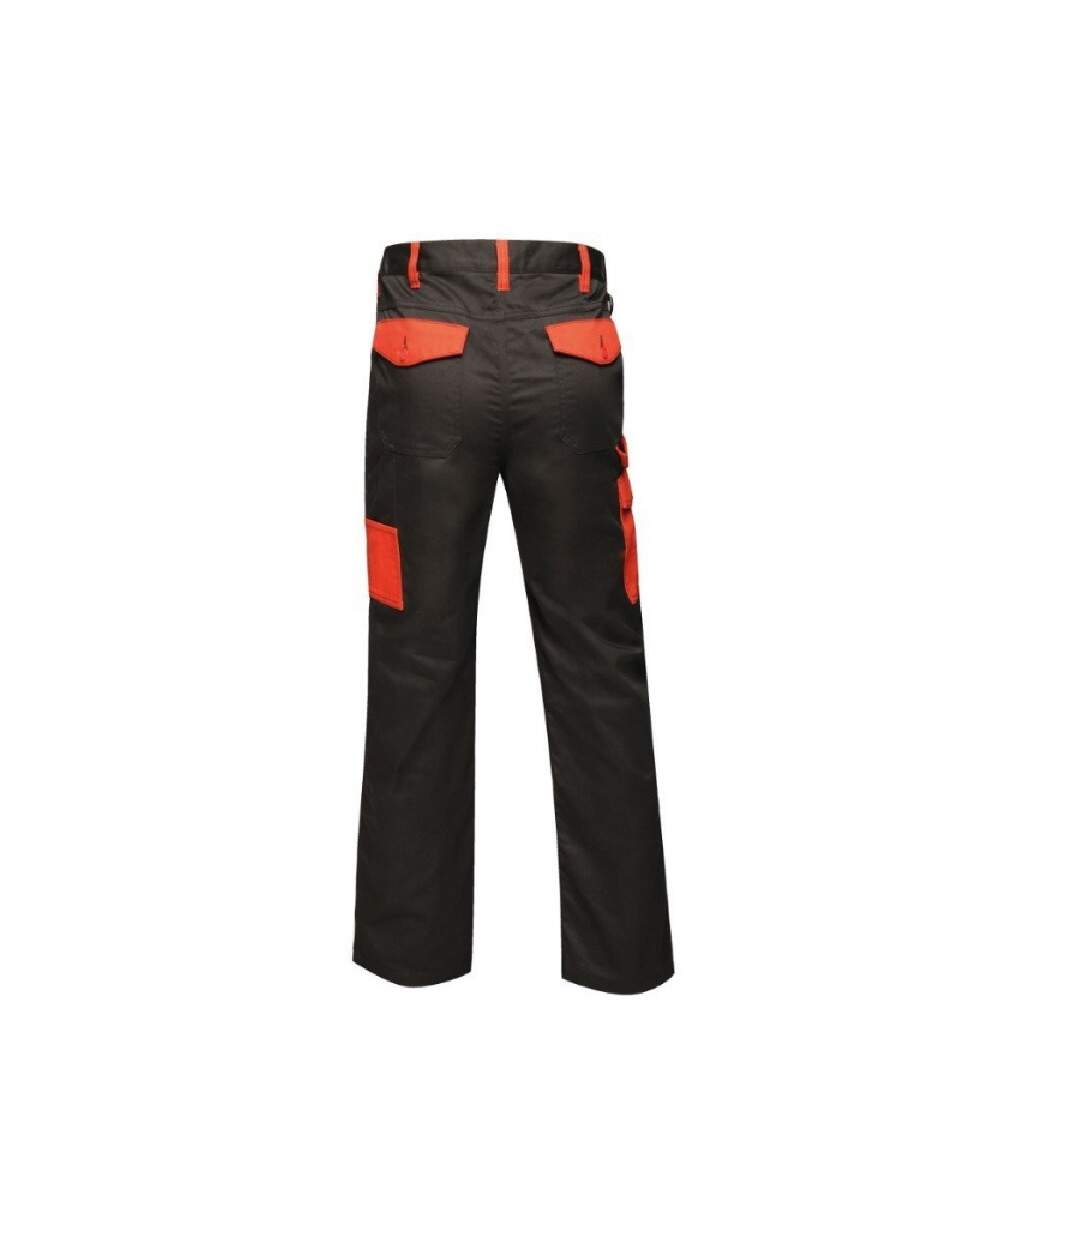 Regatta - Pantalon de travail - Homme (Noir / rouge) - UTRG4070